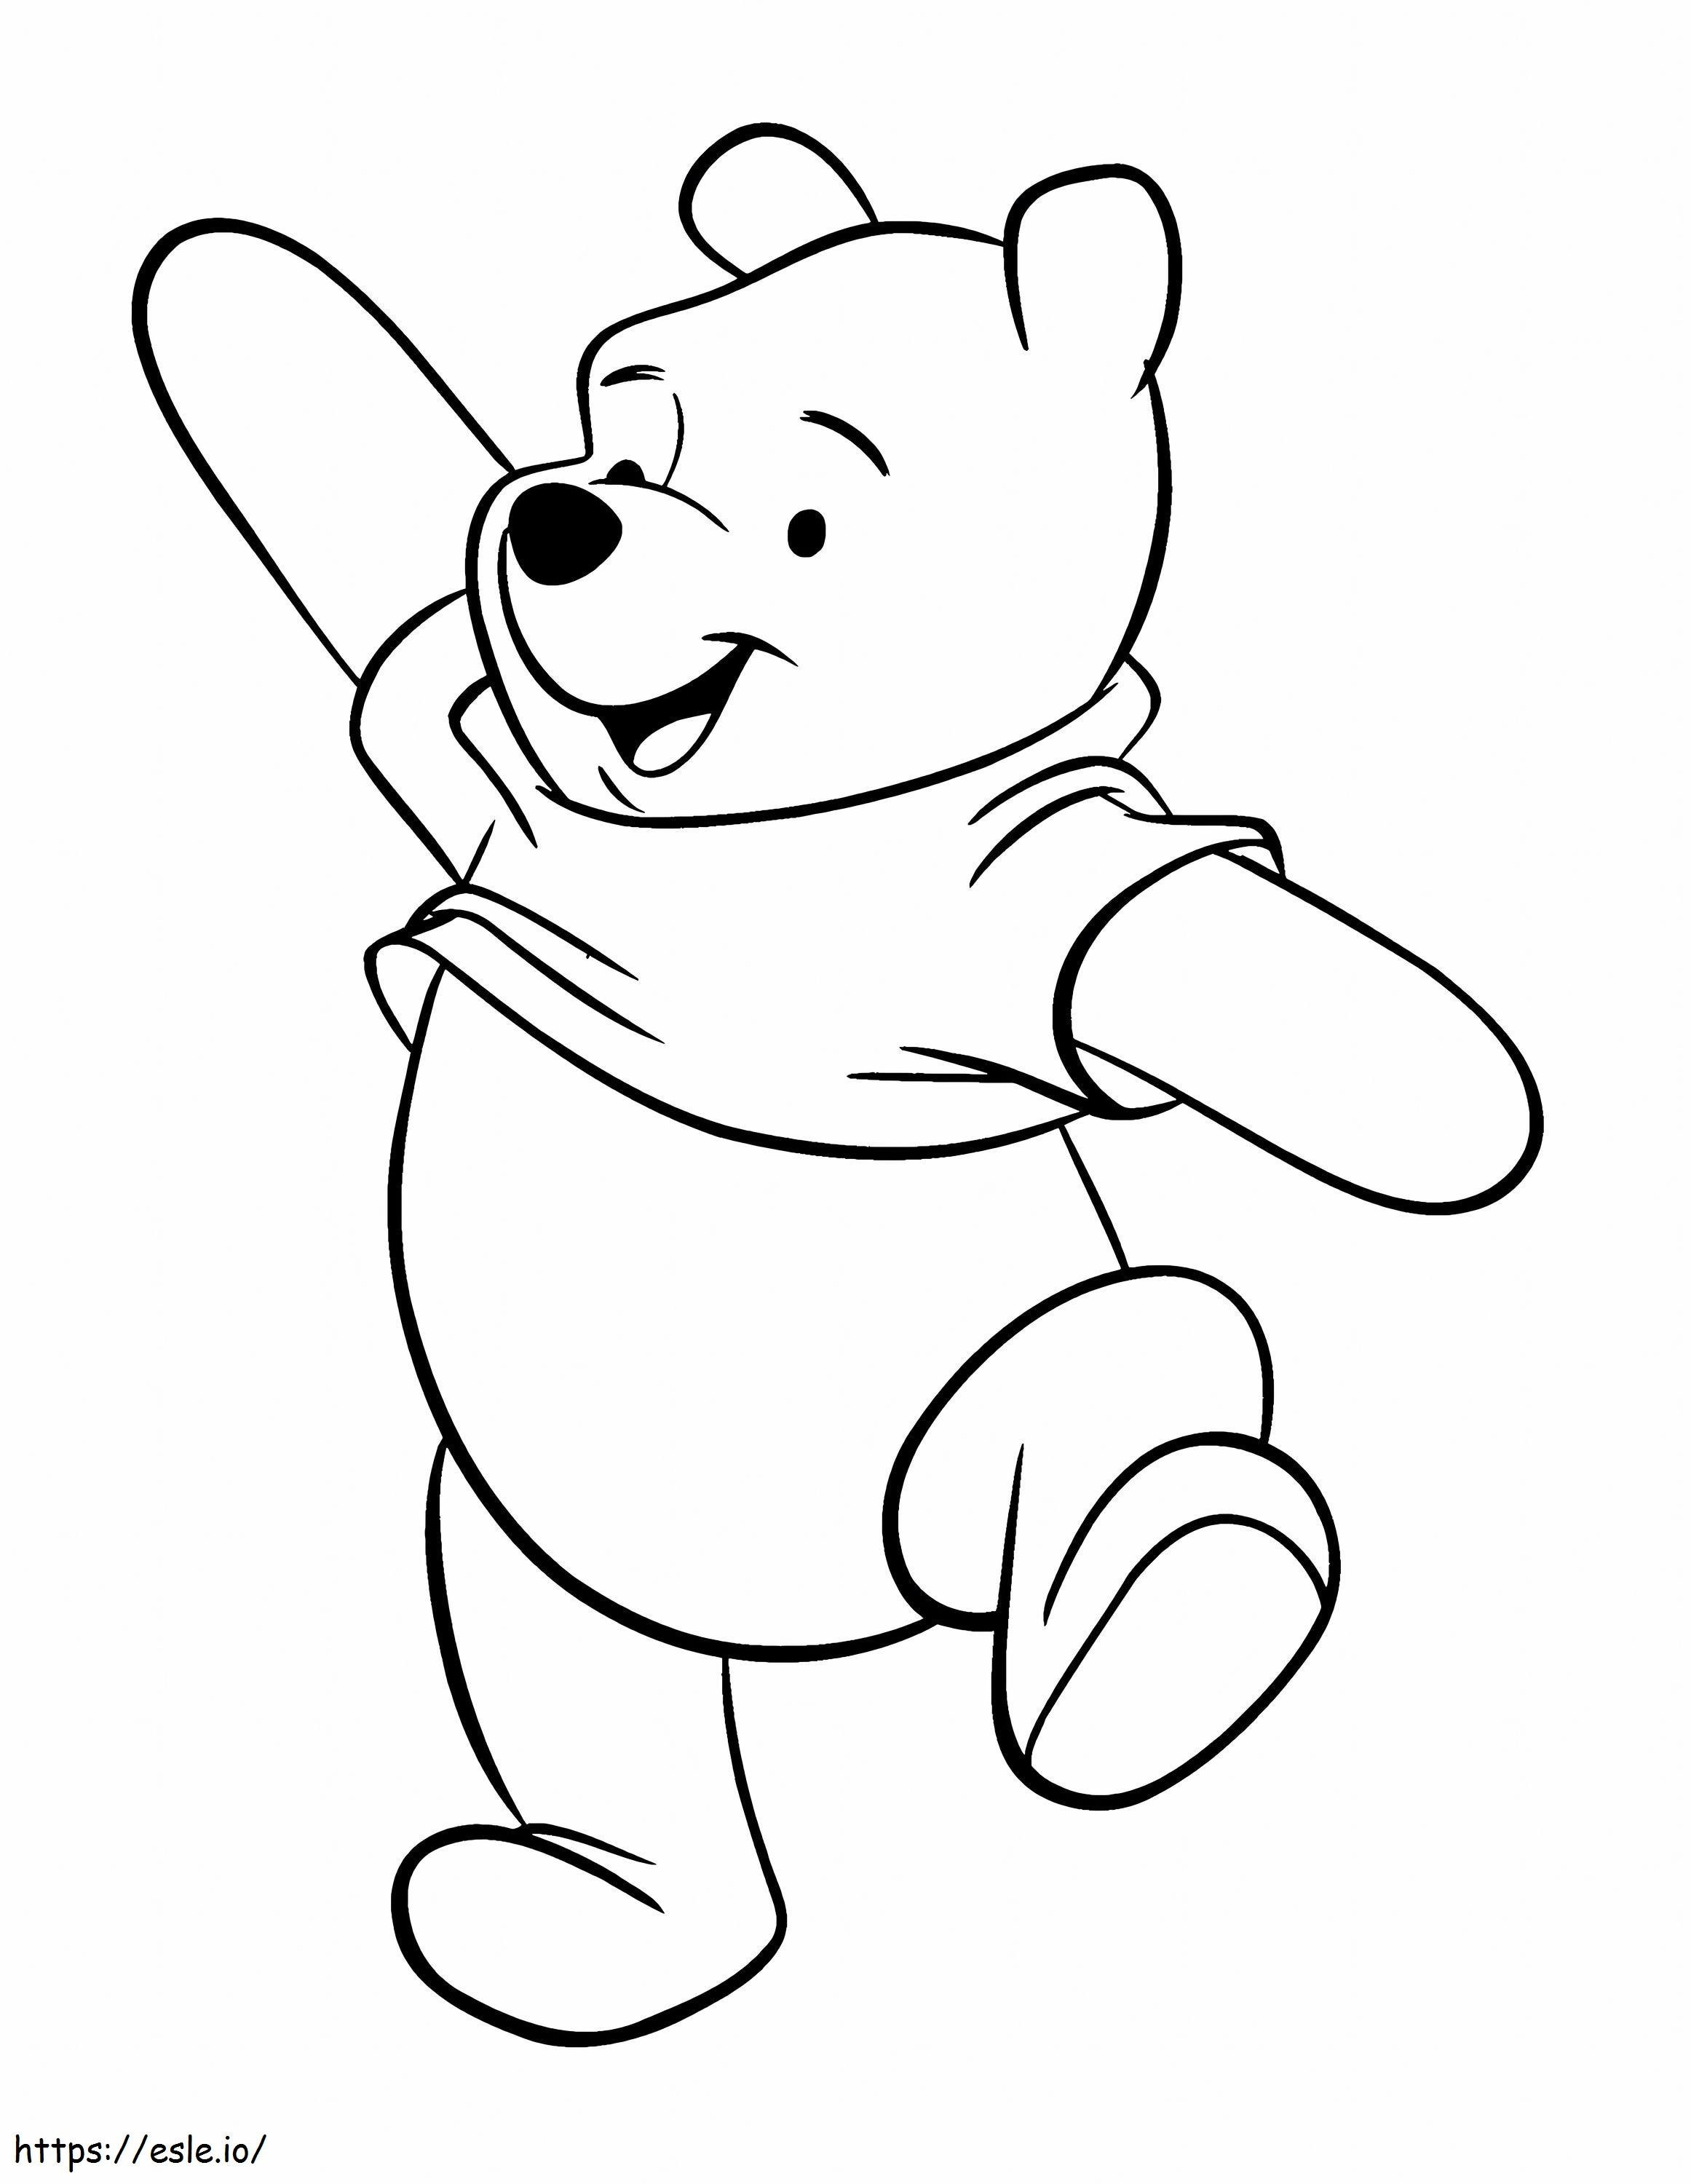 Divertente Winnie The Pooh da colorare